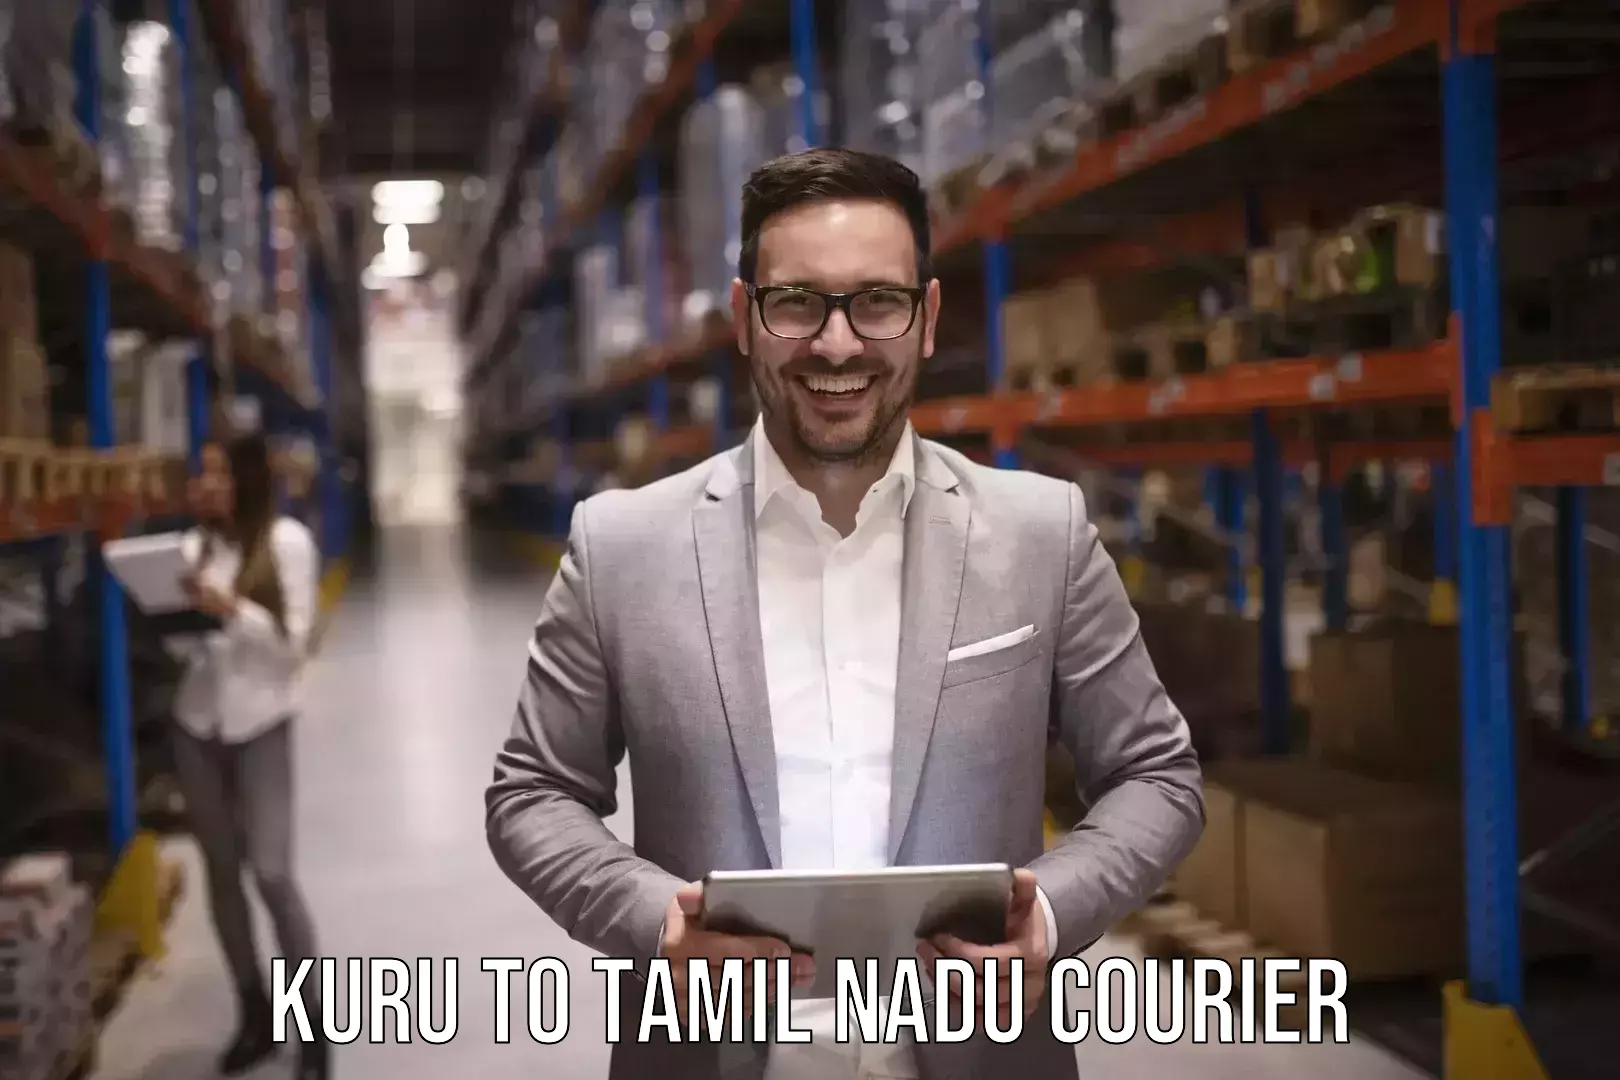 Expedited baggage courier Kuru to Tamil Nadu